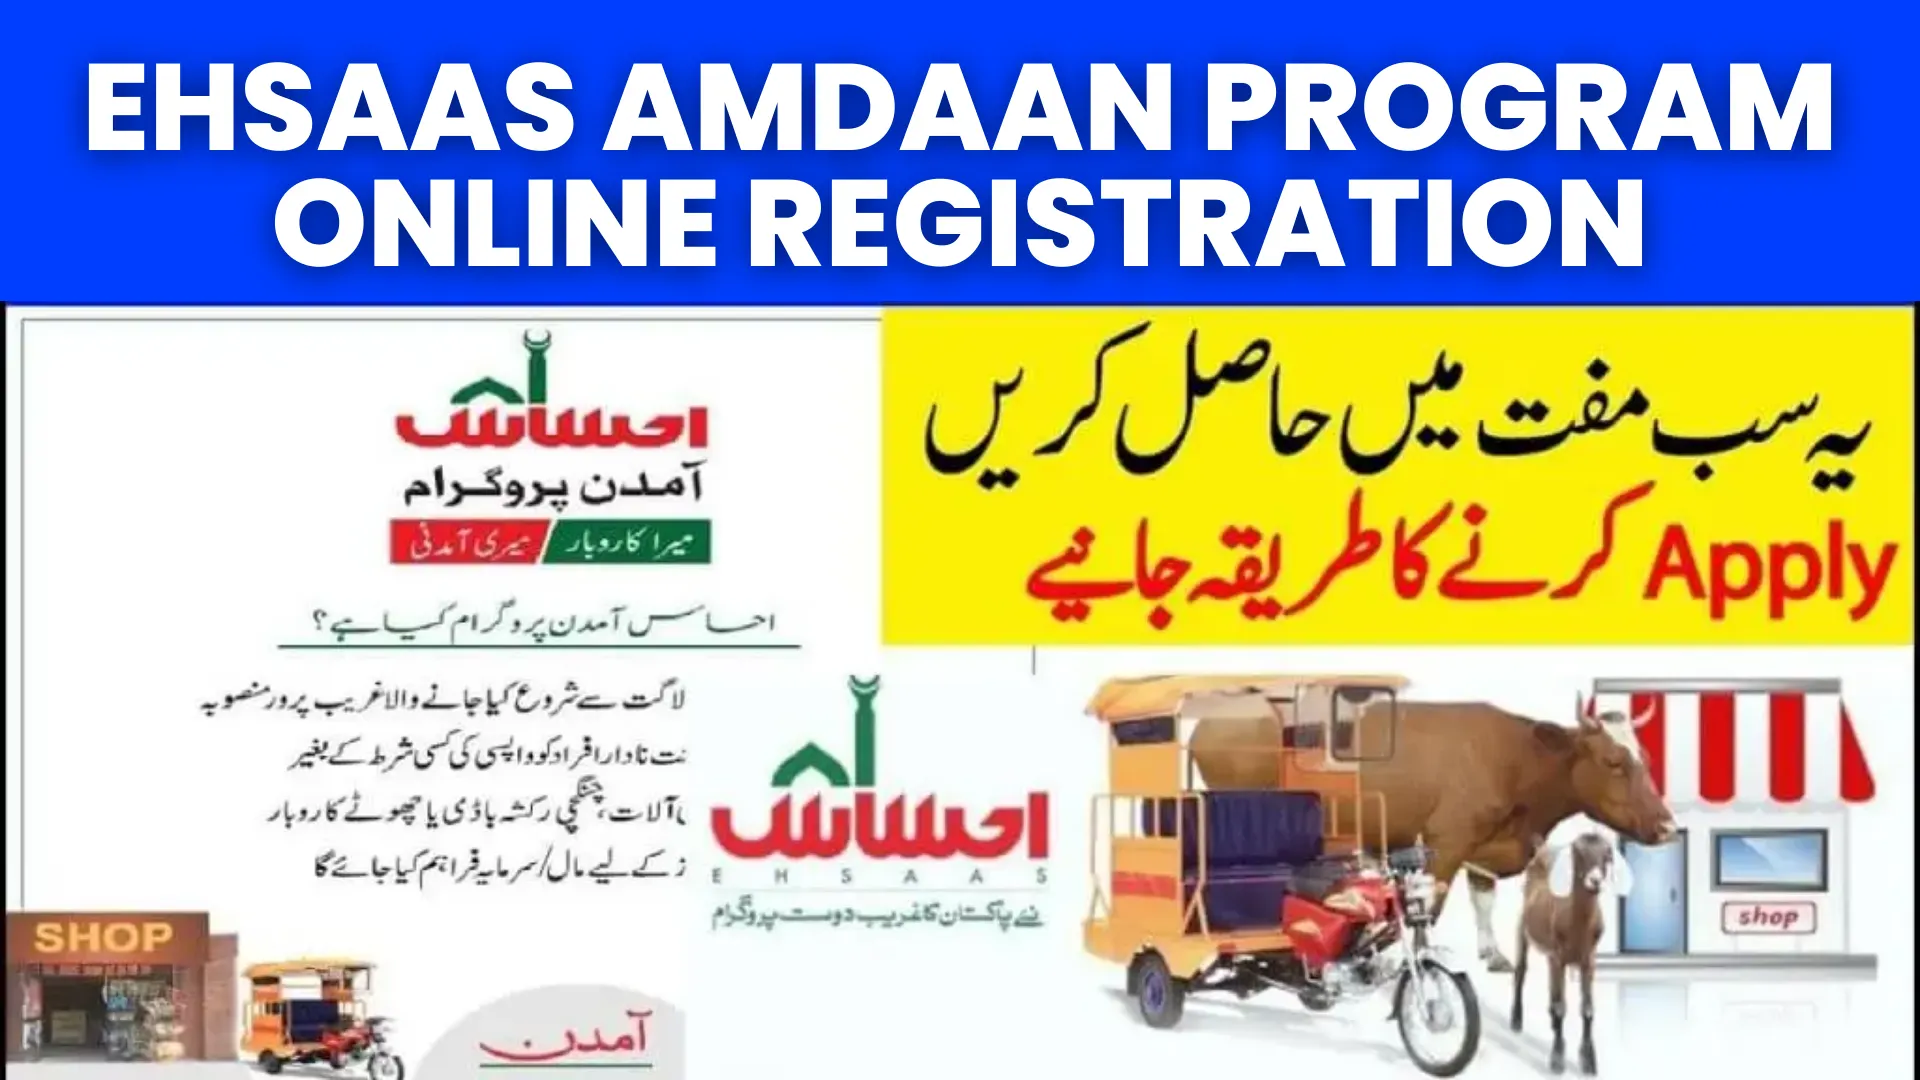 Ehsaas Amdaan Program Online Registration